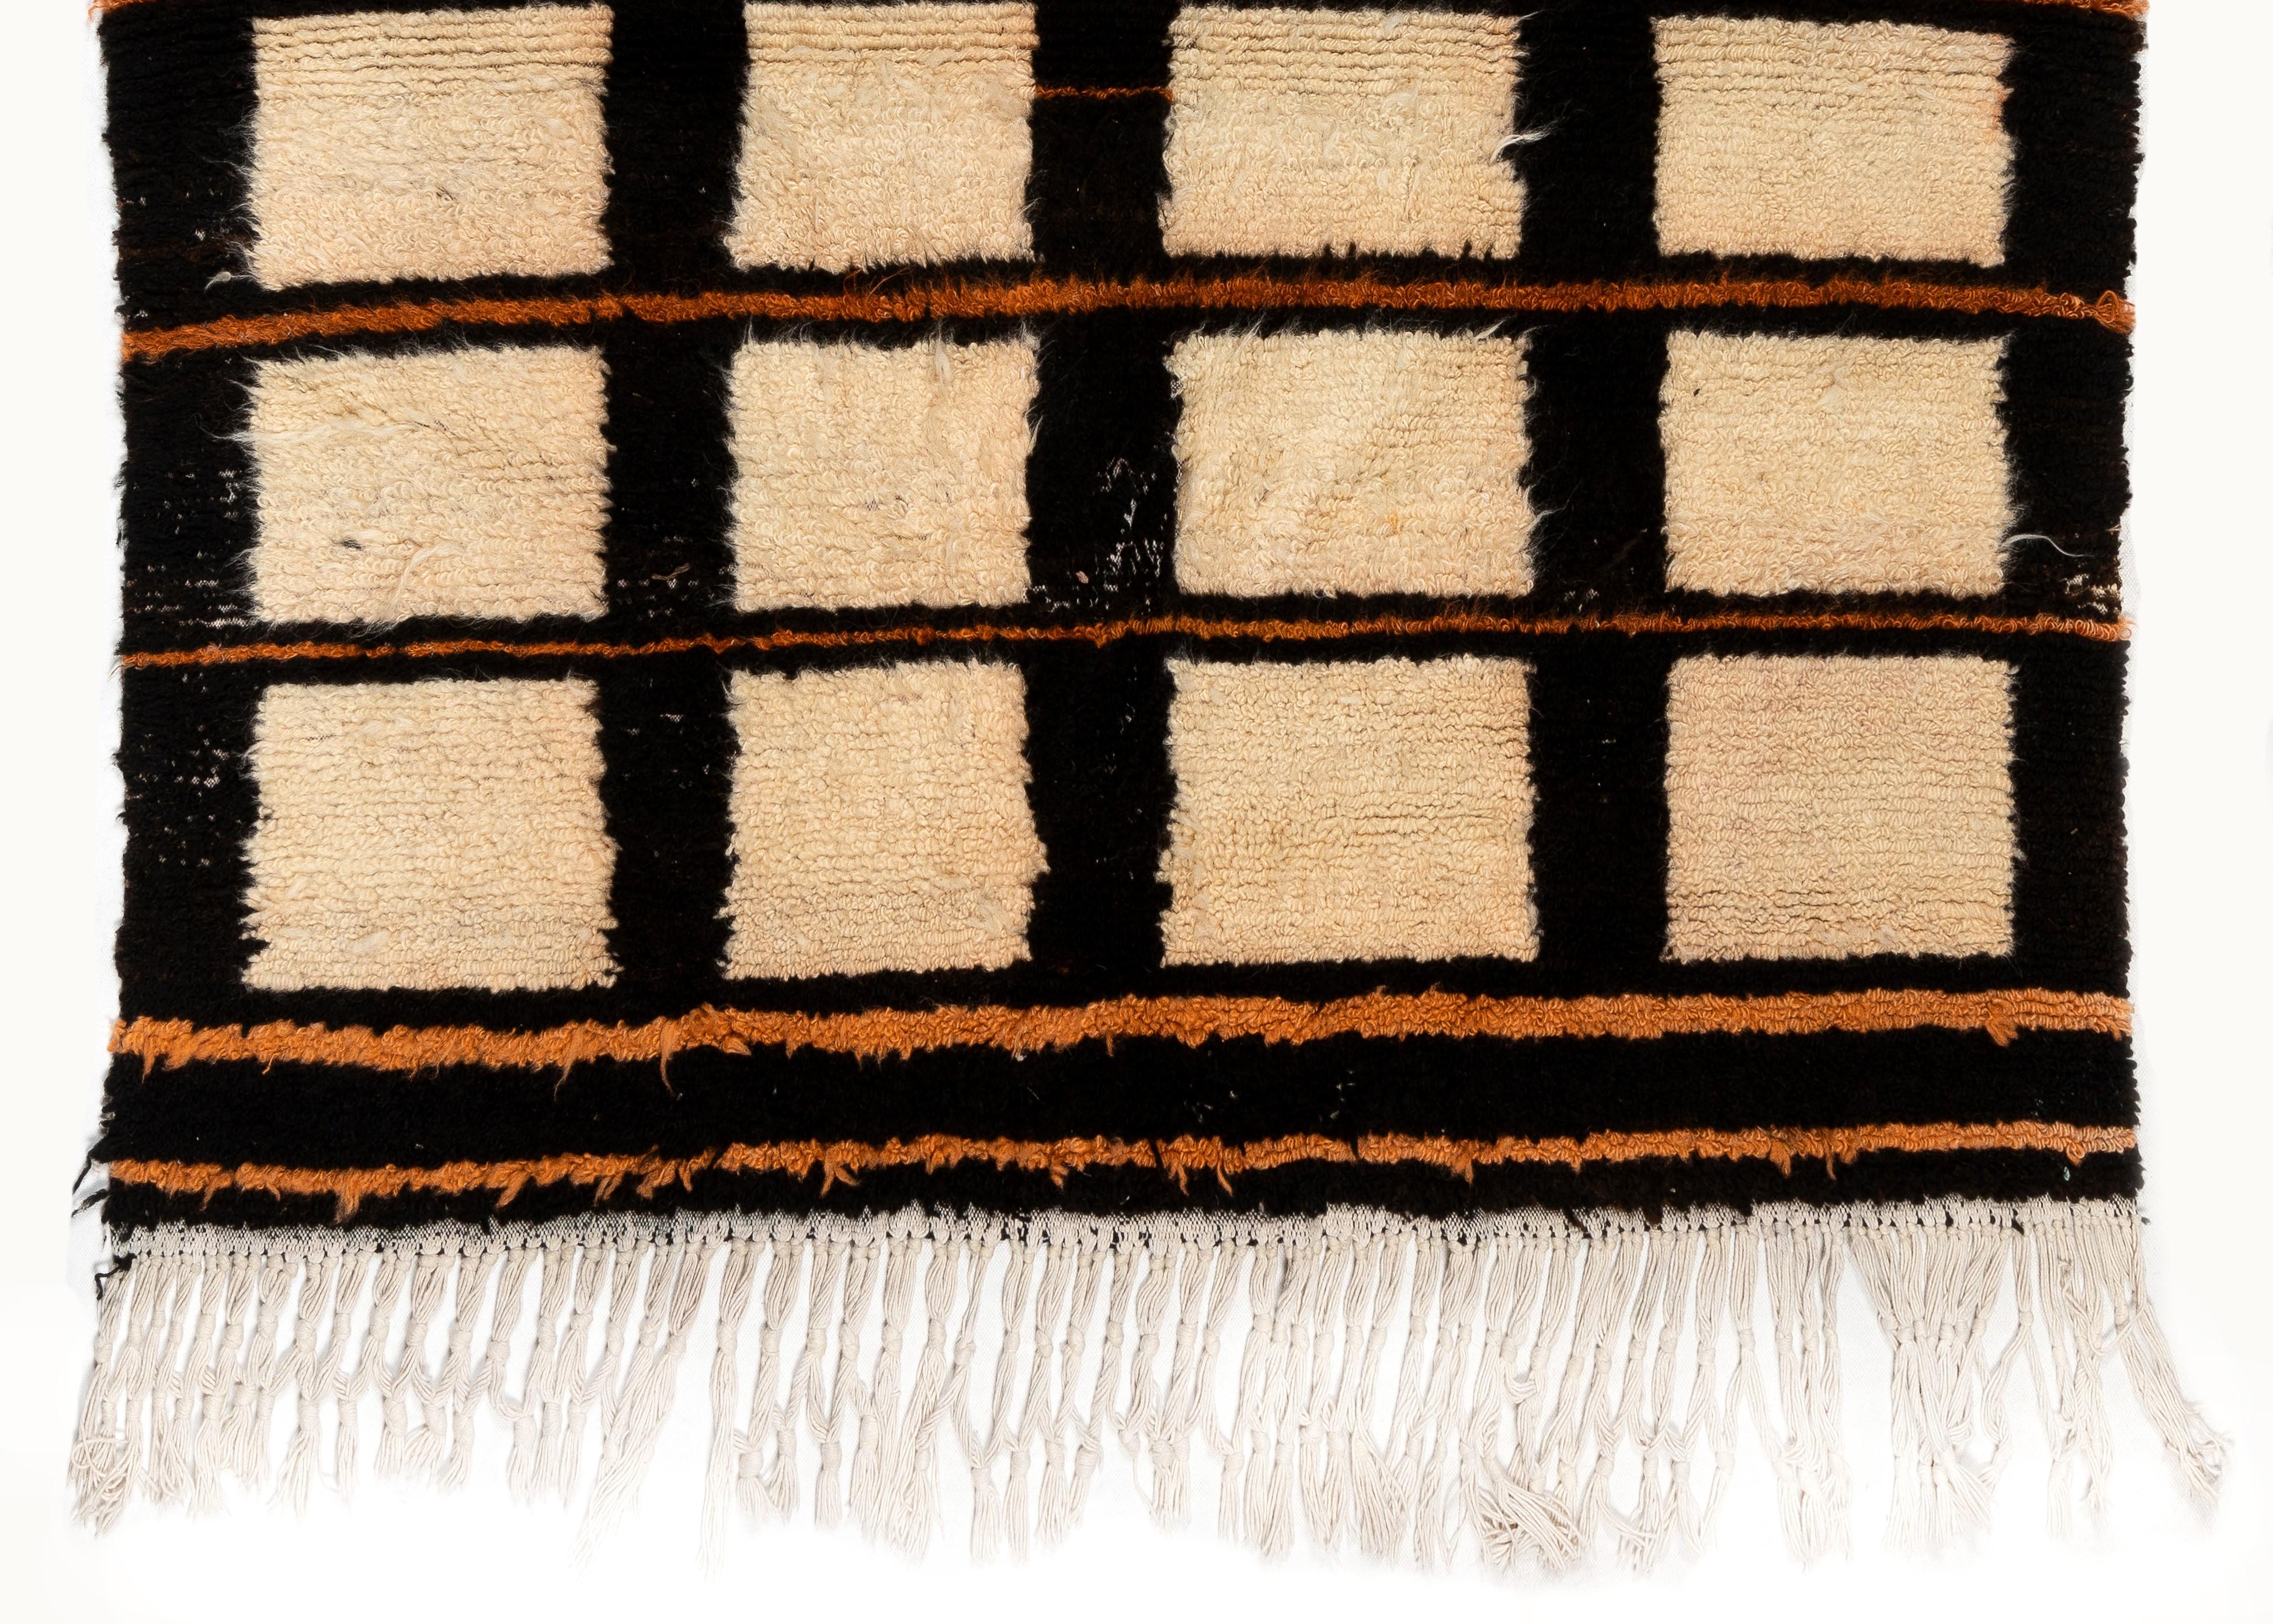 Un tapis tulu contemporain noué à la main, en laine de mouton filée à la main. 
Le tapis est fabriqué sur commande et personnalisable. Nous pouvons le fabriquer dans la taille, la hauteur des poils, la combinaison de couleurs et le motif de votre